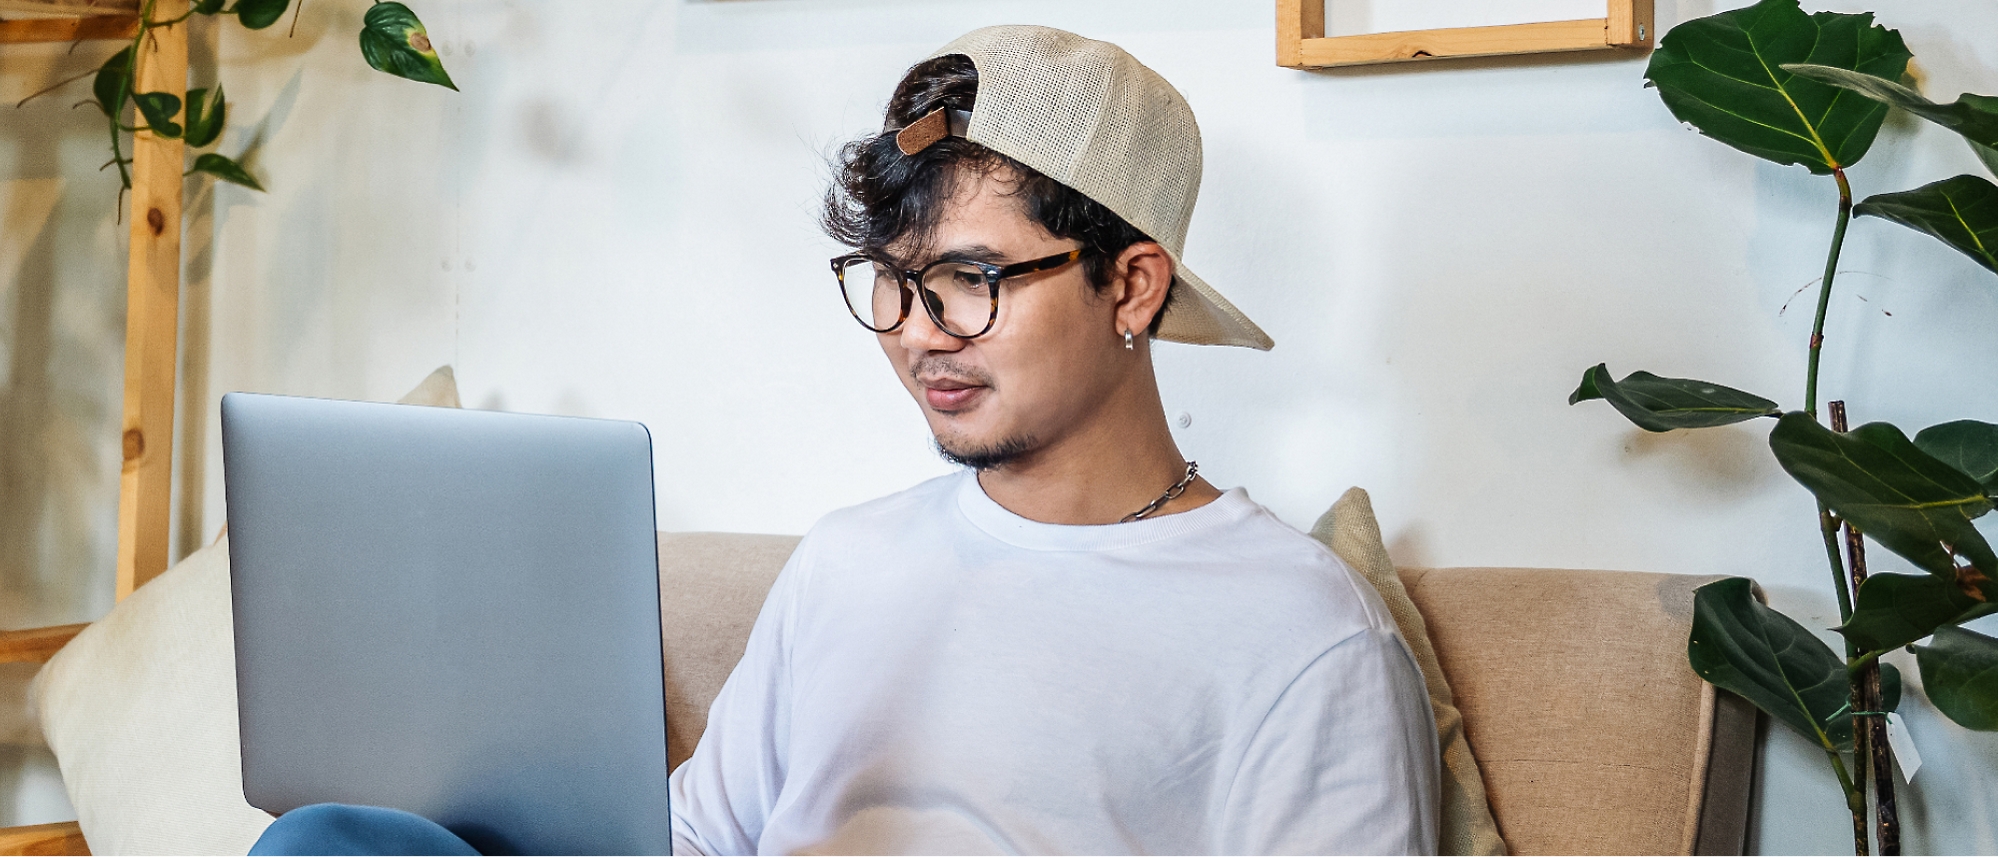 Uma pessoa usando óculos e um boné para trás está sentada em um sofá, usando um laptop